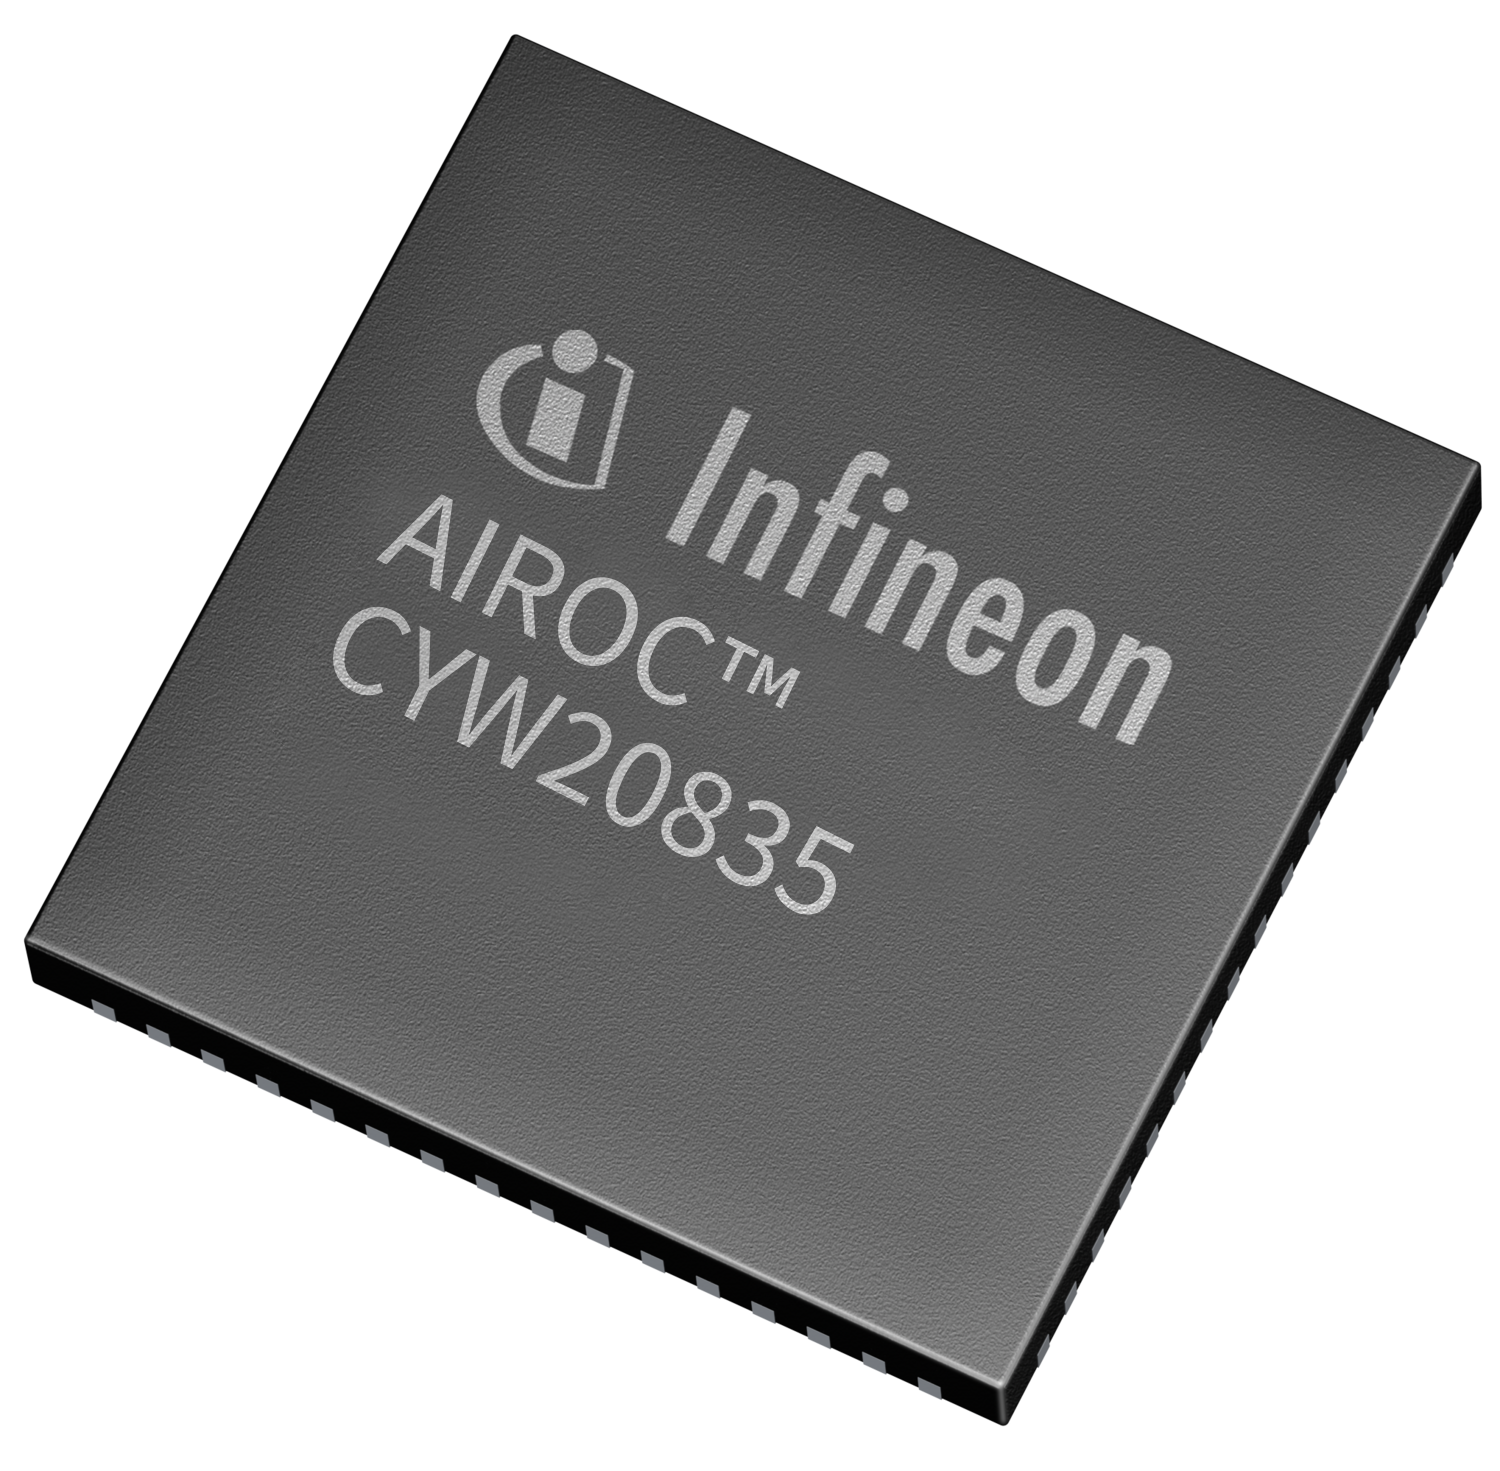 Infineon übertrifft Analystenschätzungen und hebt Prognose an